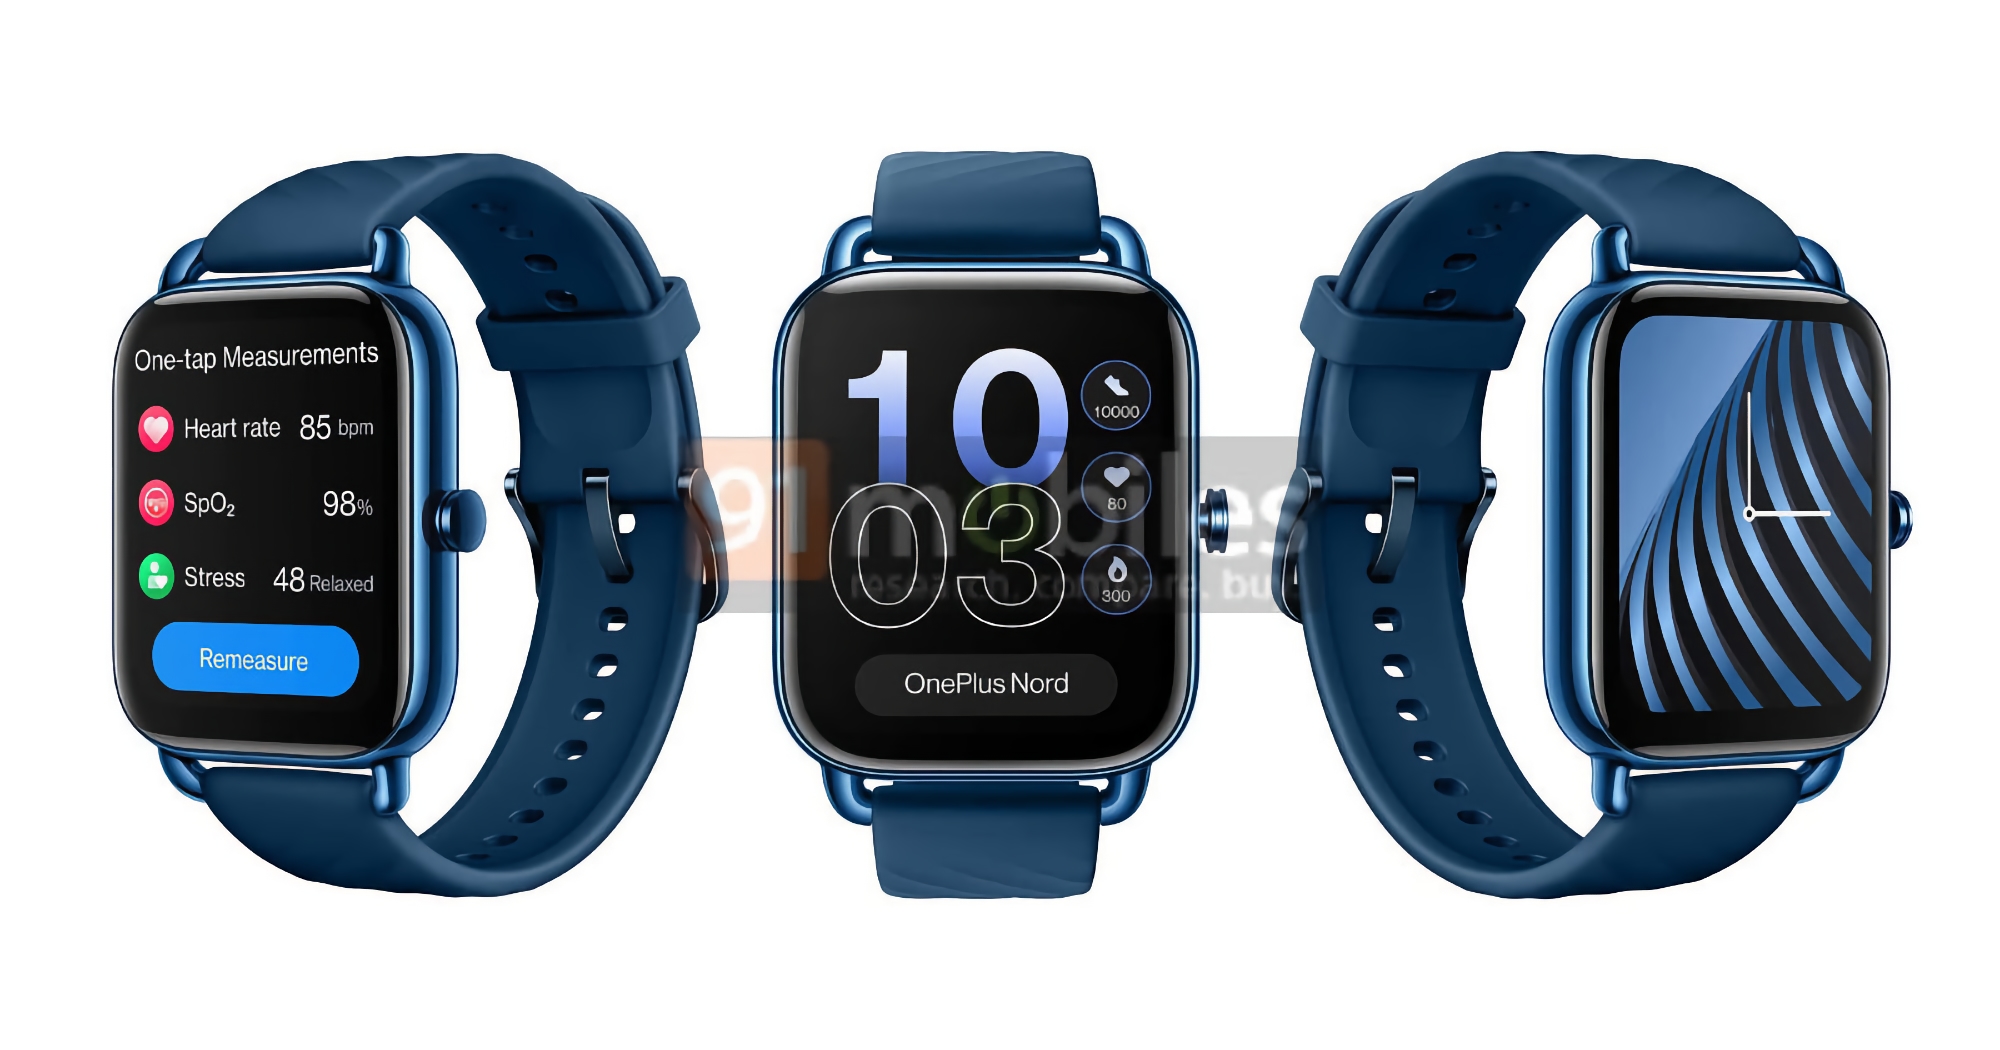 OnePlus Nord Watch è apparso in nuovi rendering: smartwatch con display AMOLED, Bluetooth 5.2 e durata della batteria fino a 10 giorni